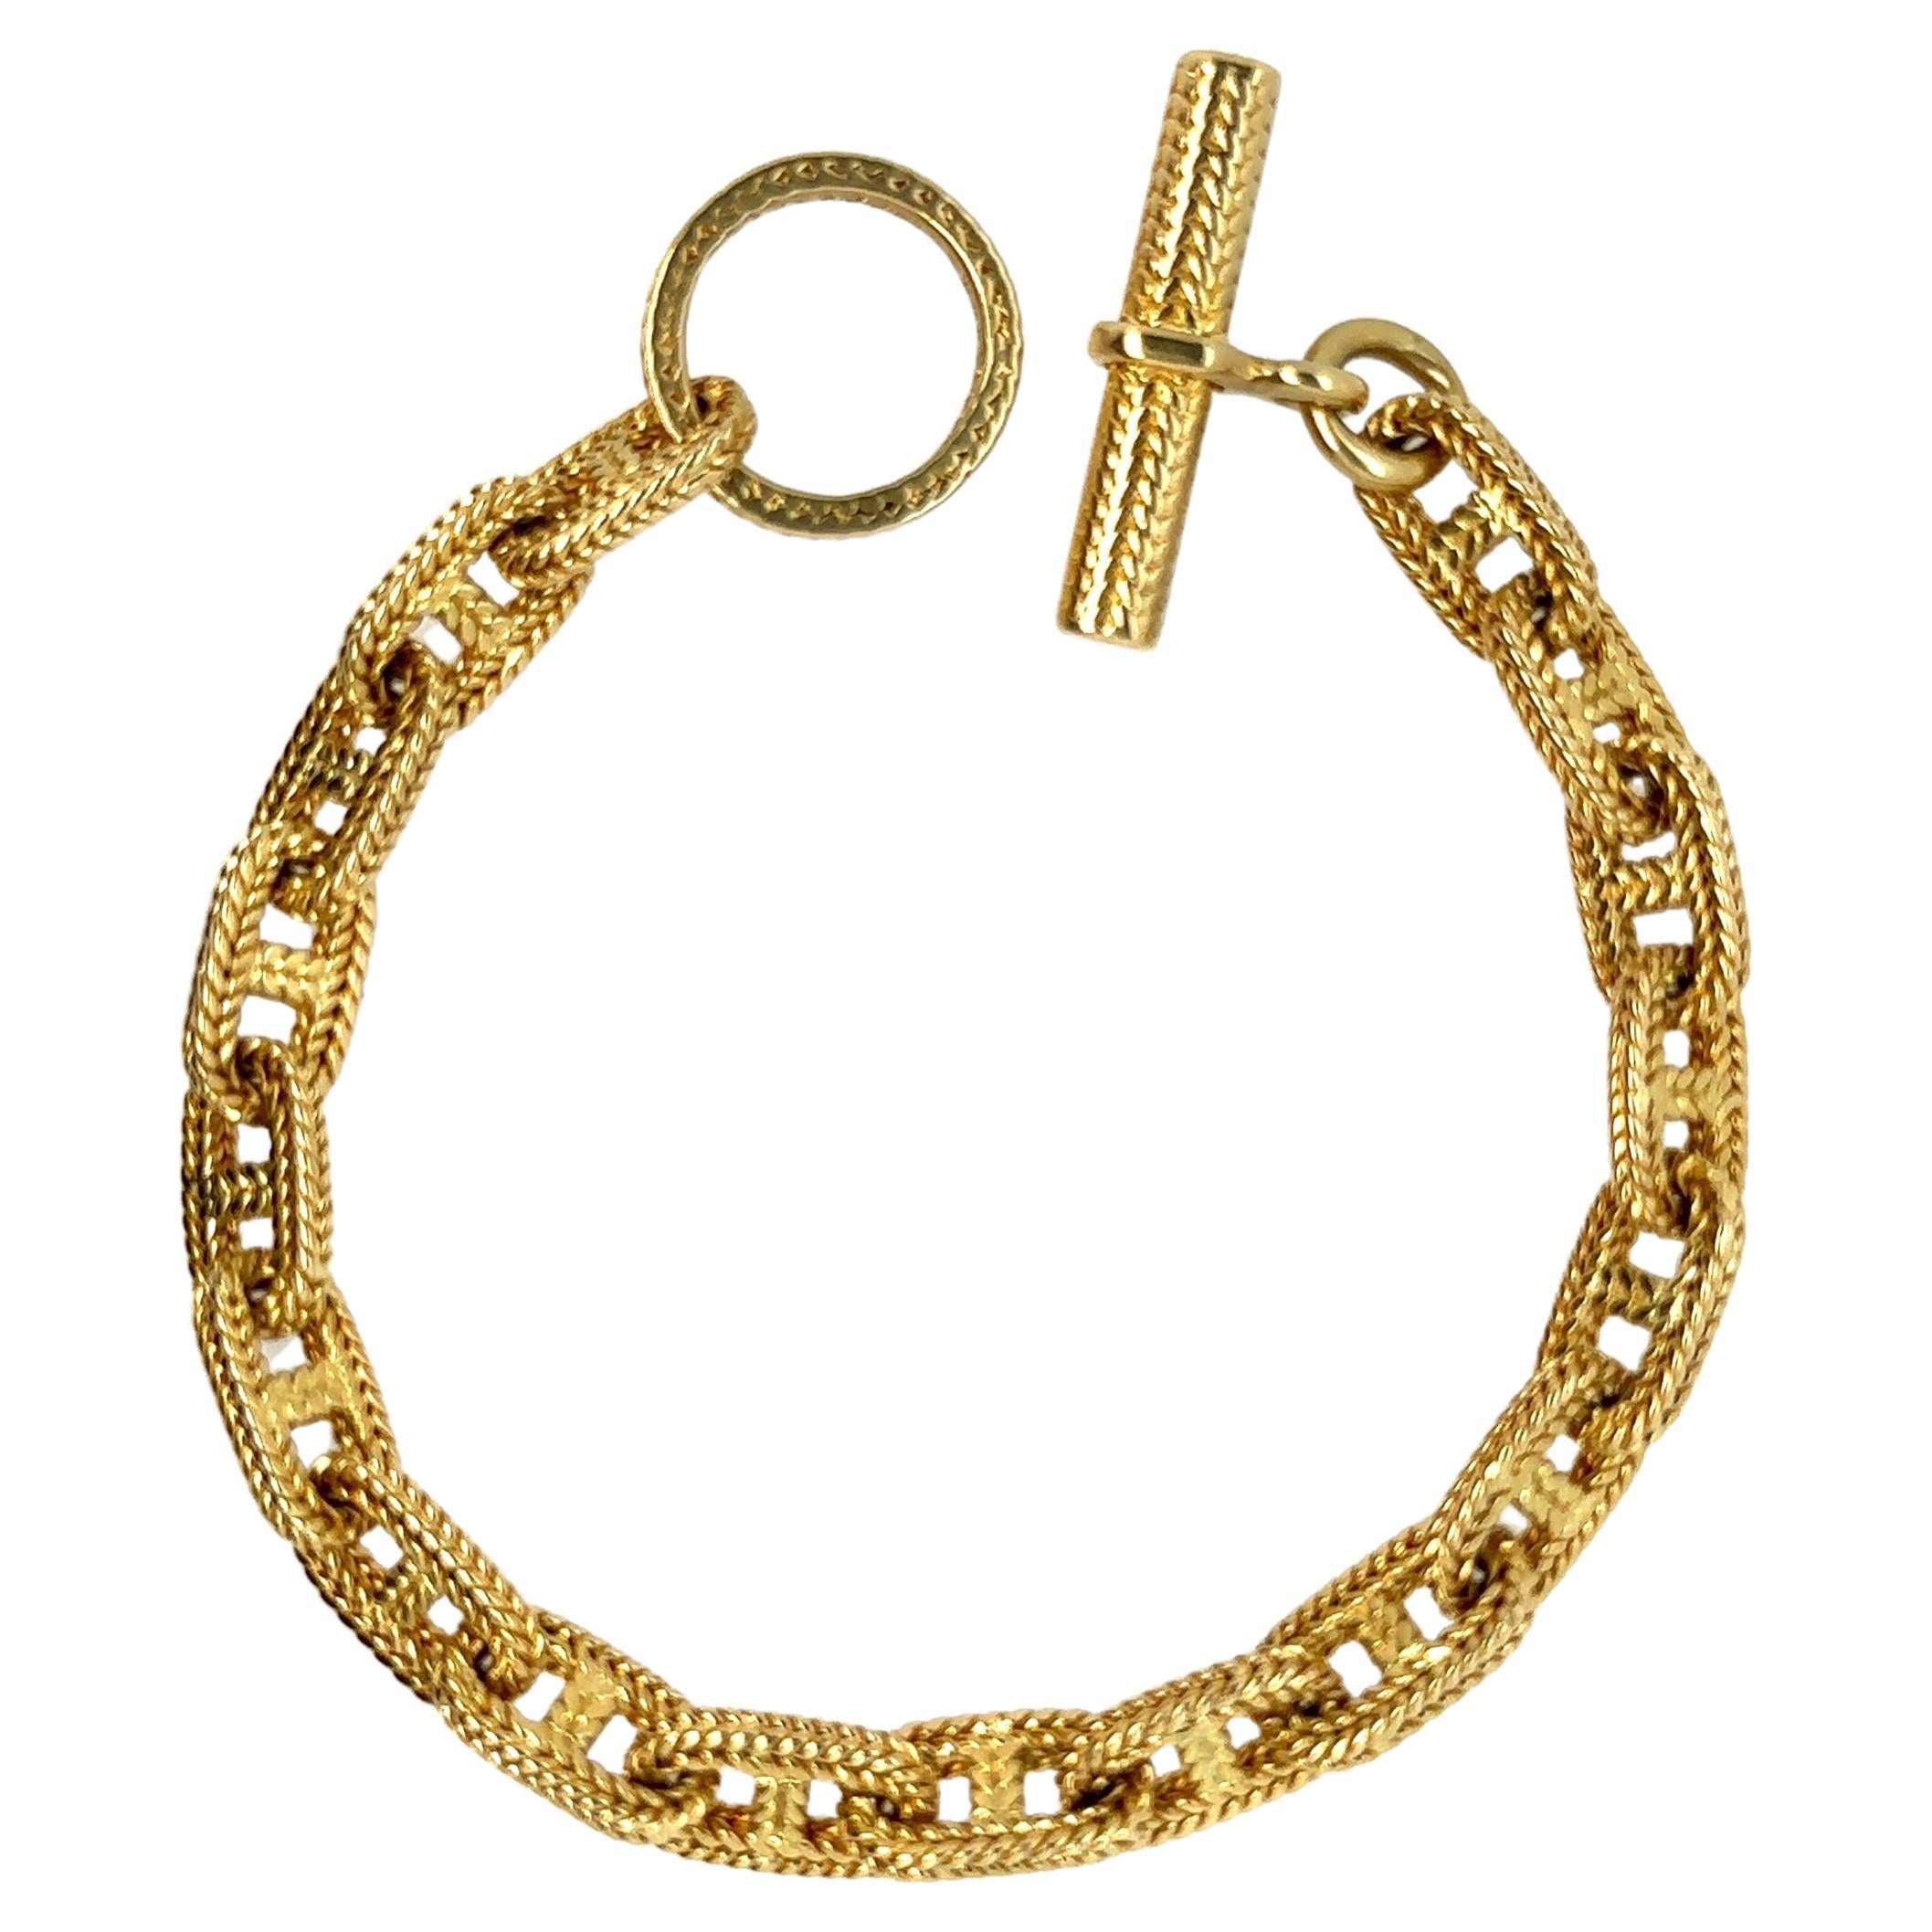 Hermes Bracelet by Georges Lenfant  Solid Yellow Gold 18 Karat  